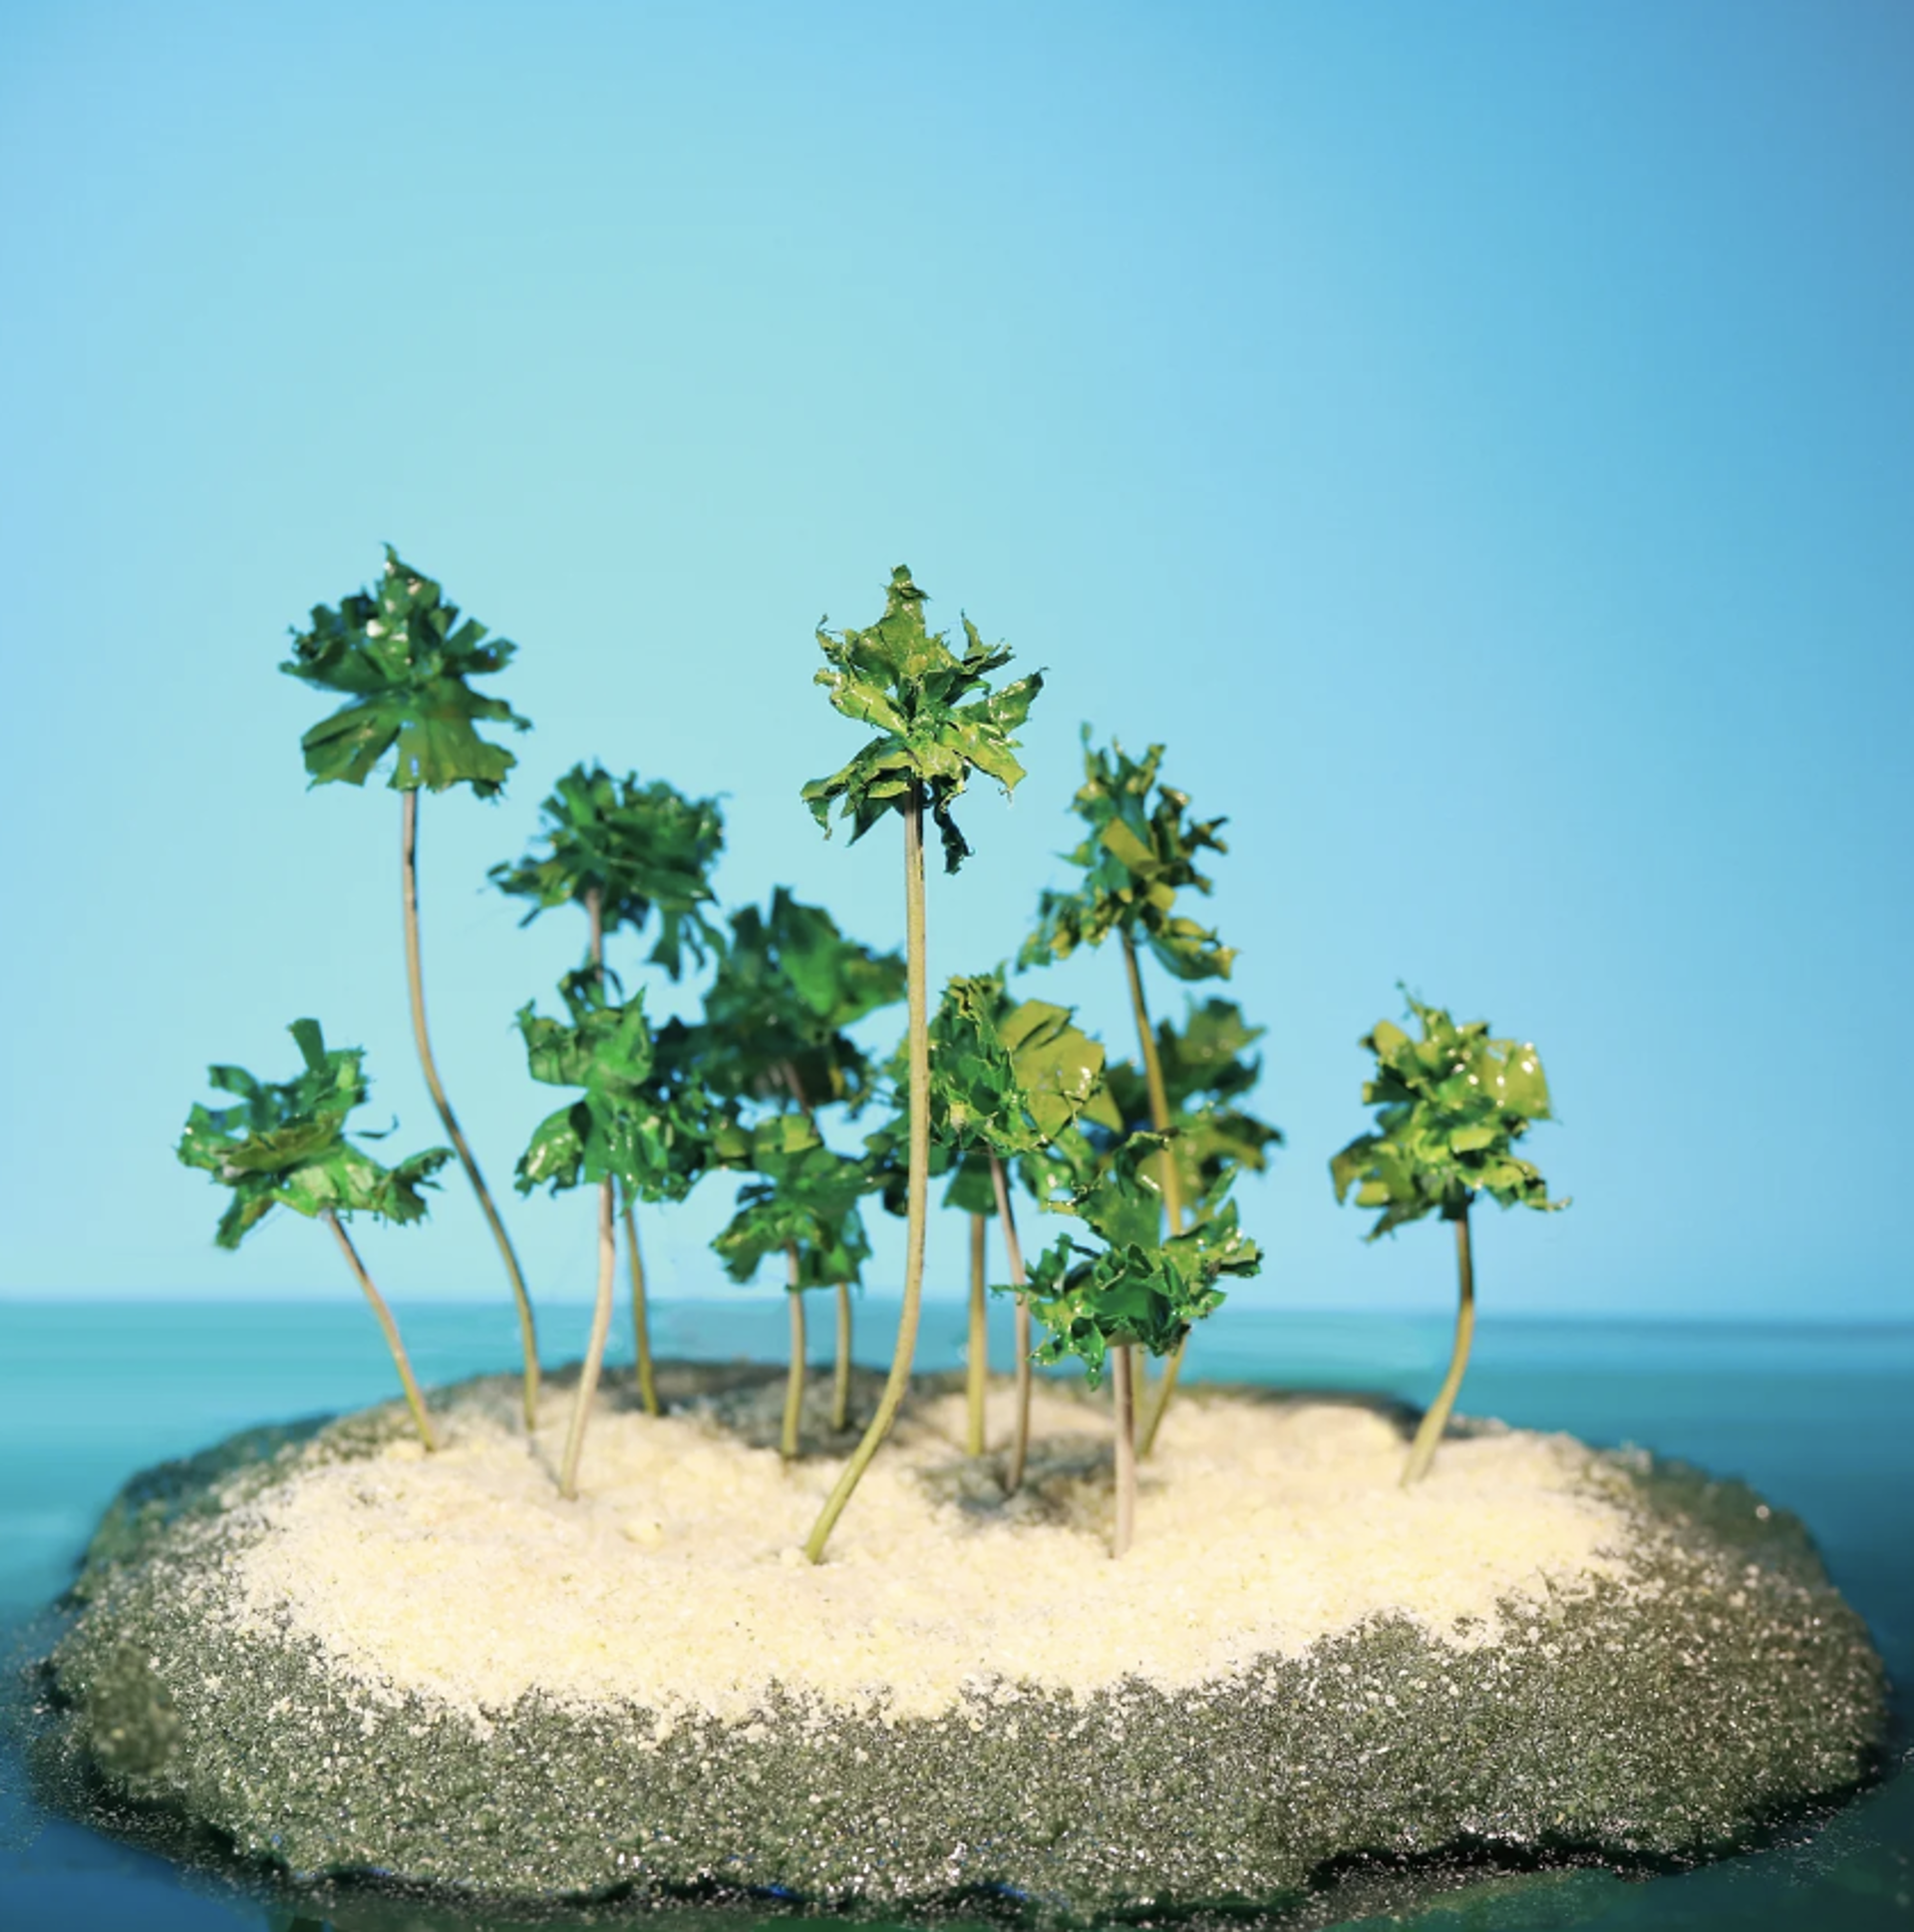 Deserted Island by Stephen Dorsett